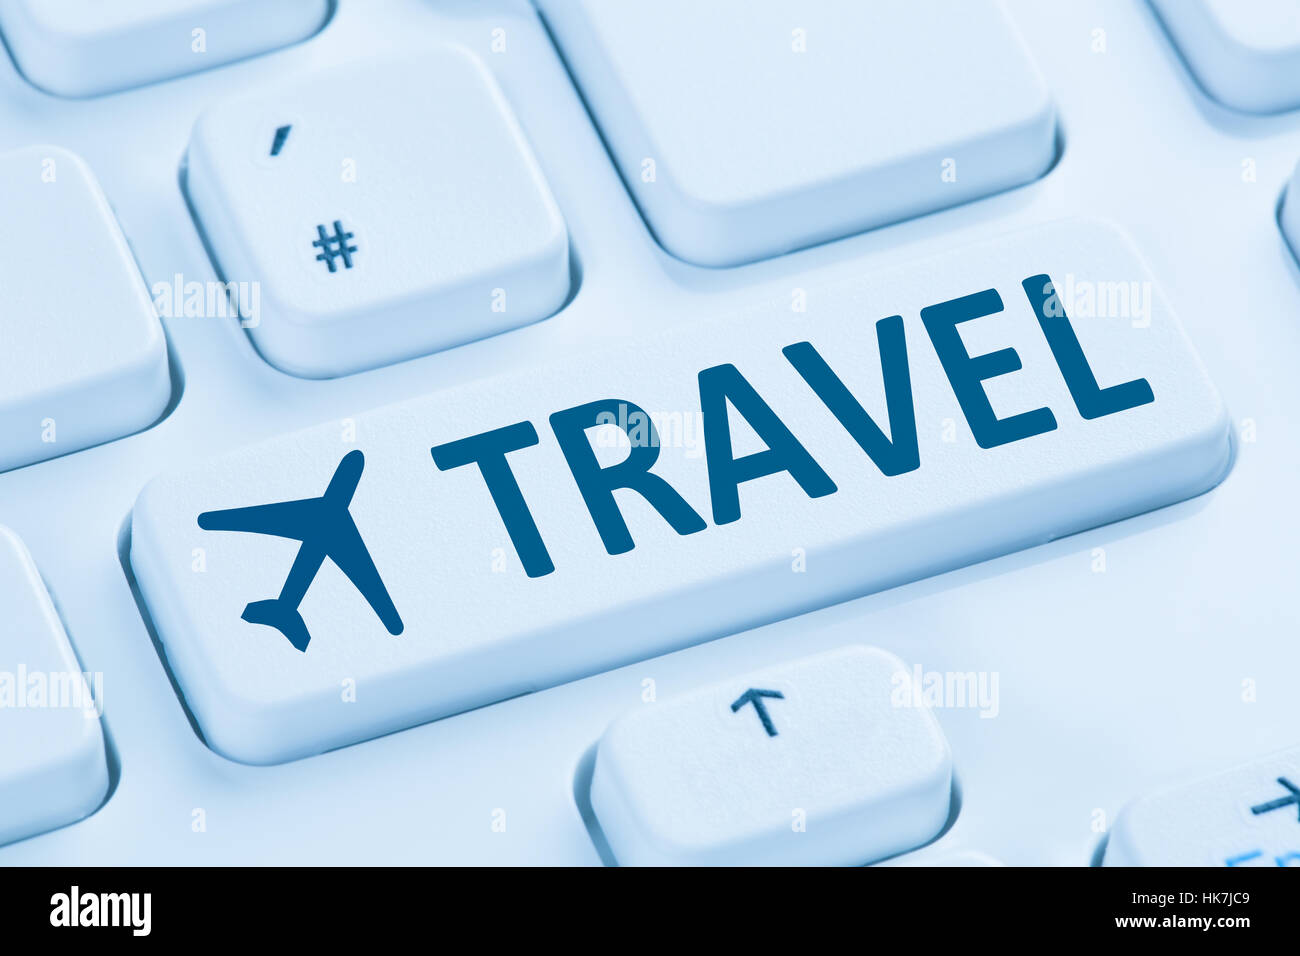 Prenotazione vacanze volo vacanze viaggi online shop internet blu simbolo della tastiera del computer Foto Stock